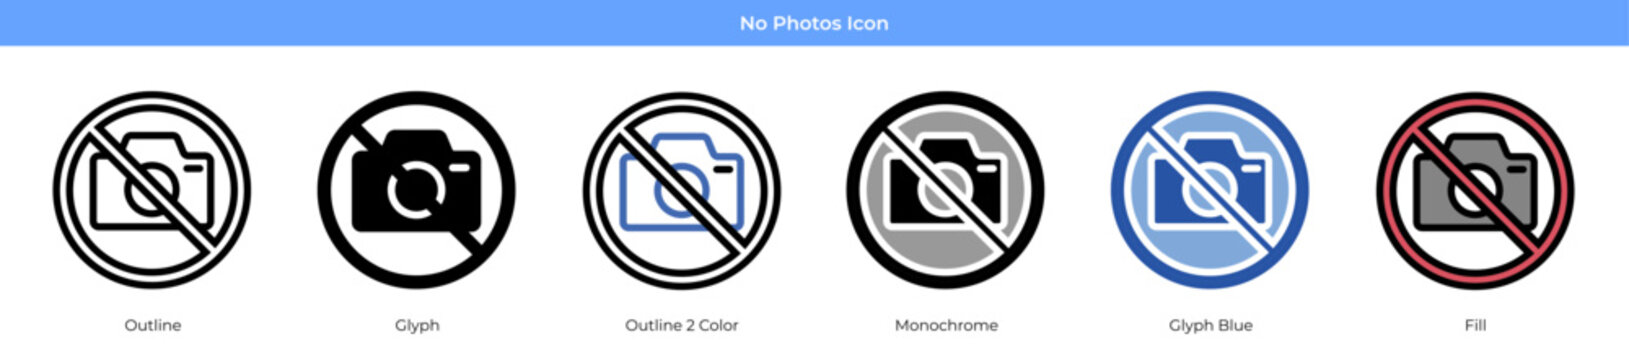 No Photos Icon 